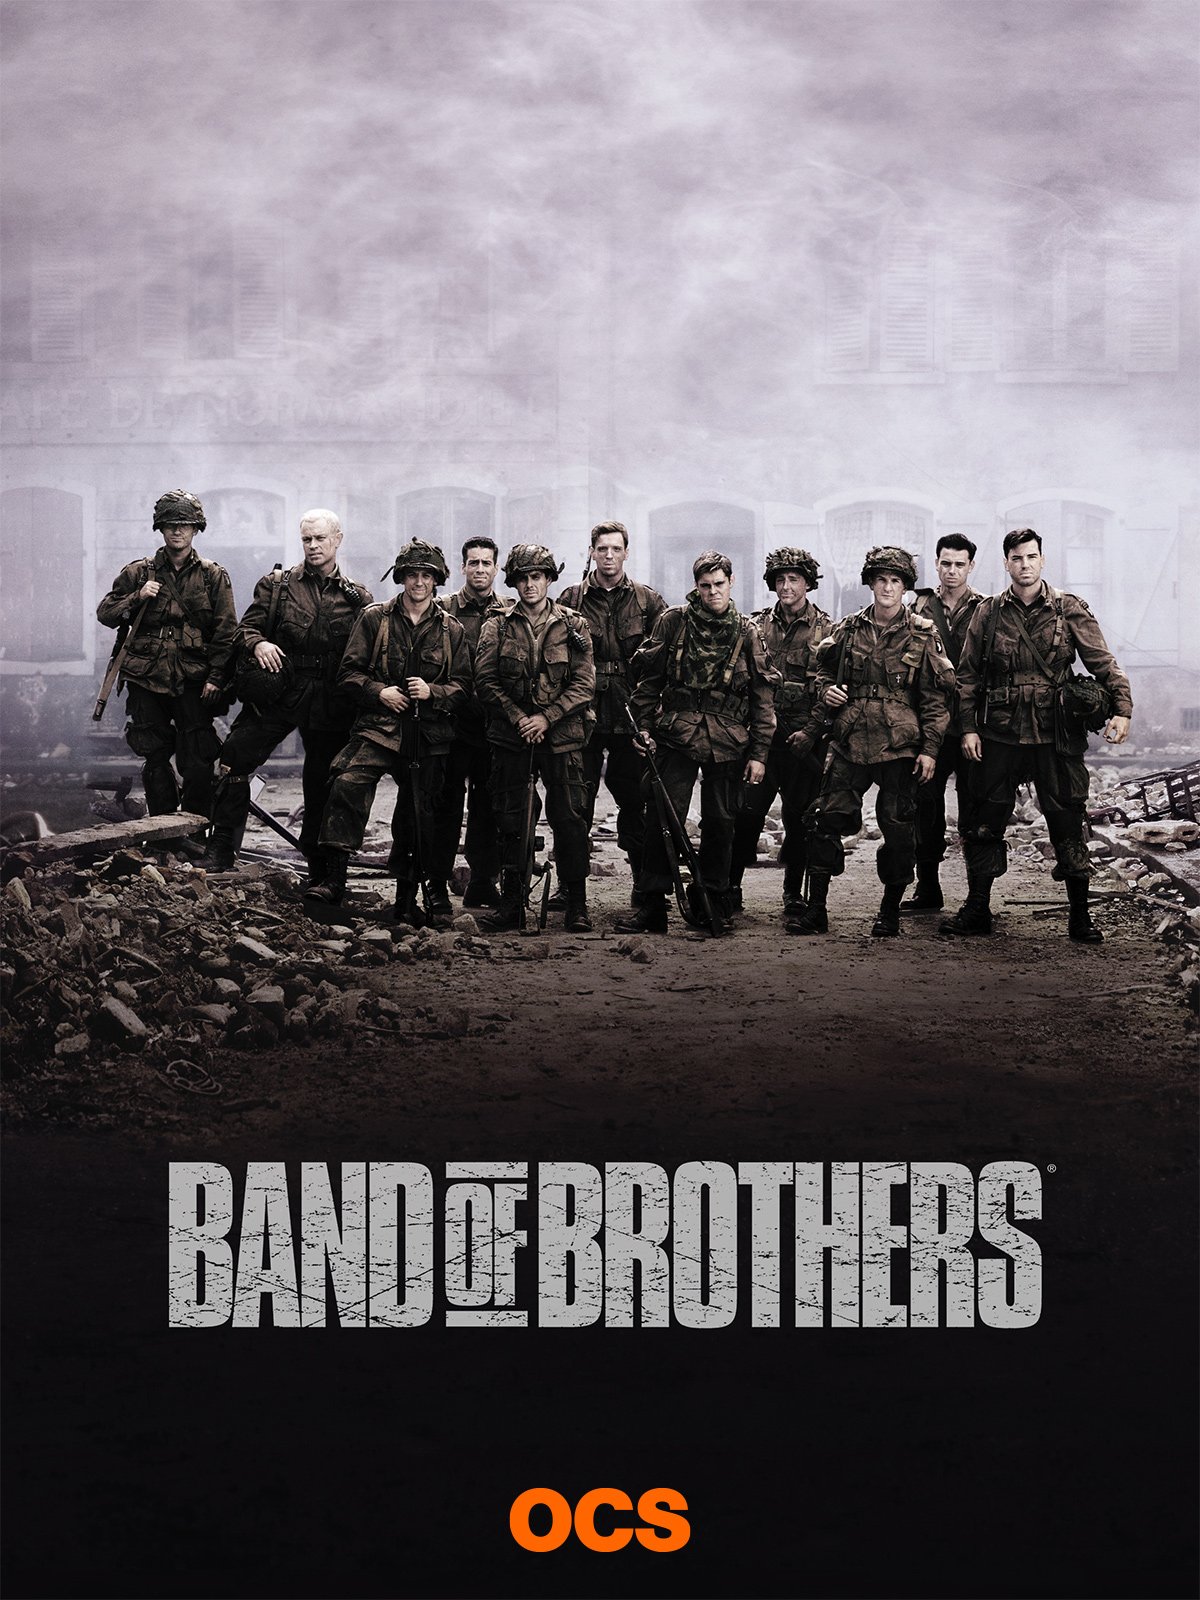 Band of brothers. Братья по оружию Постер.